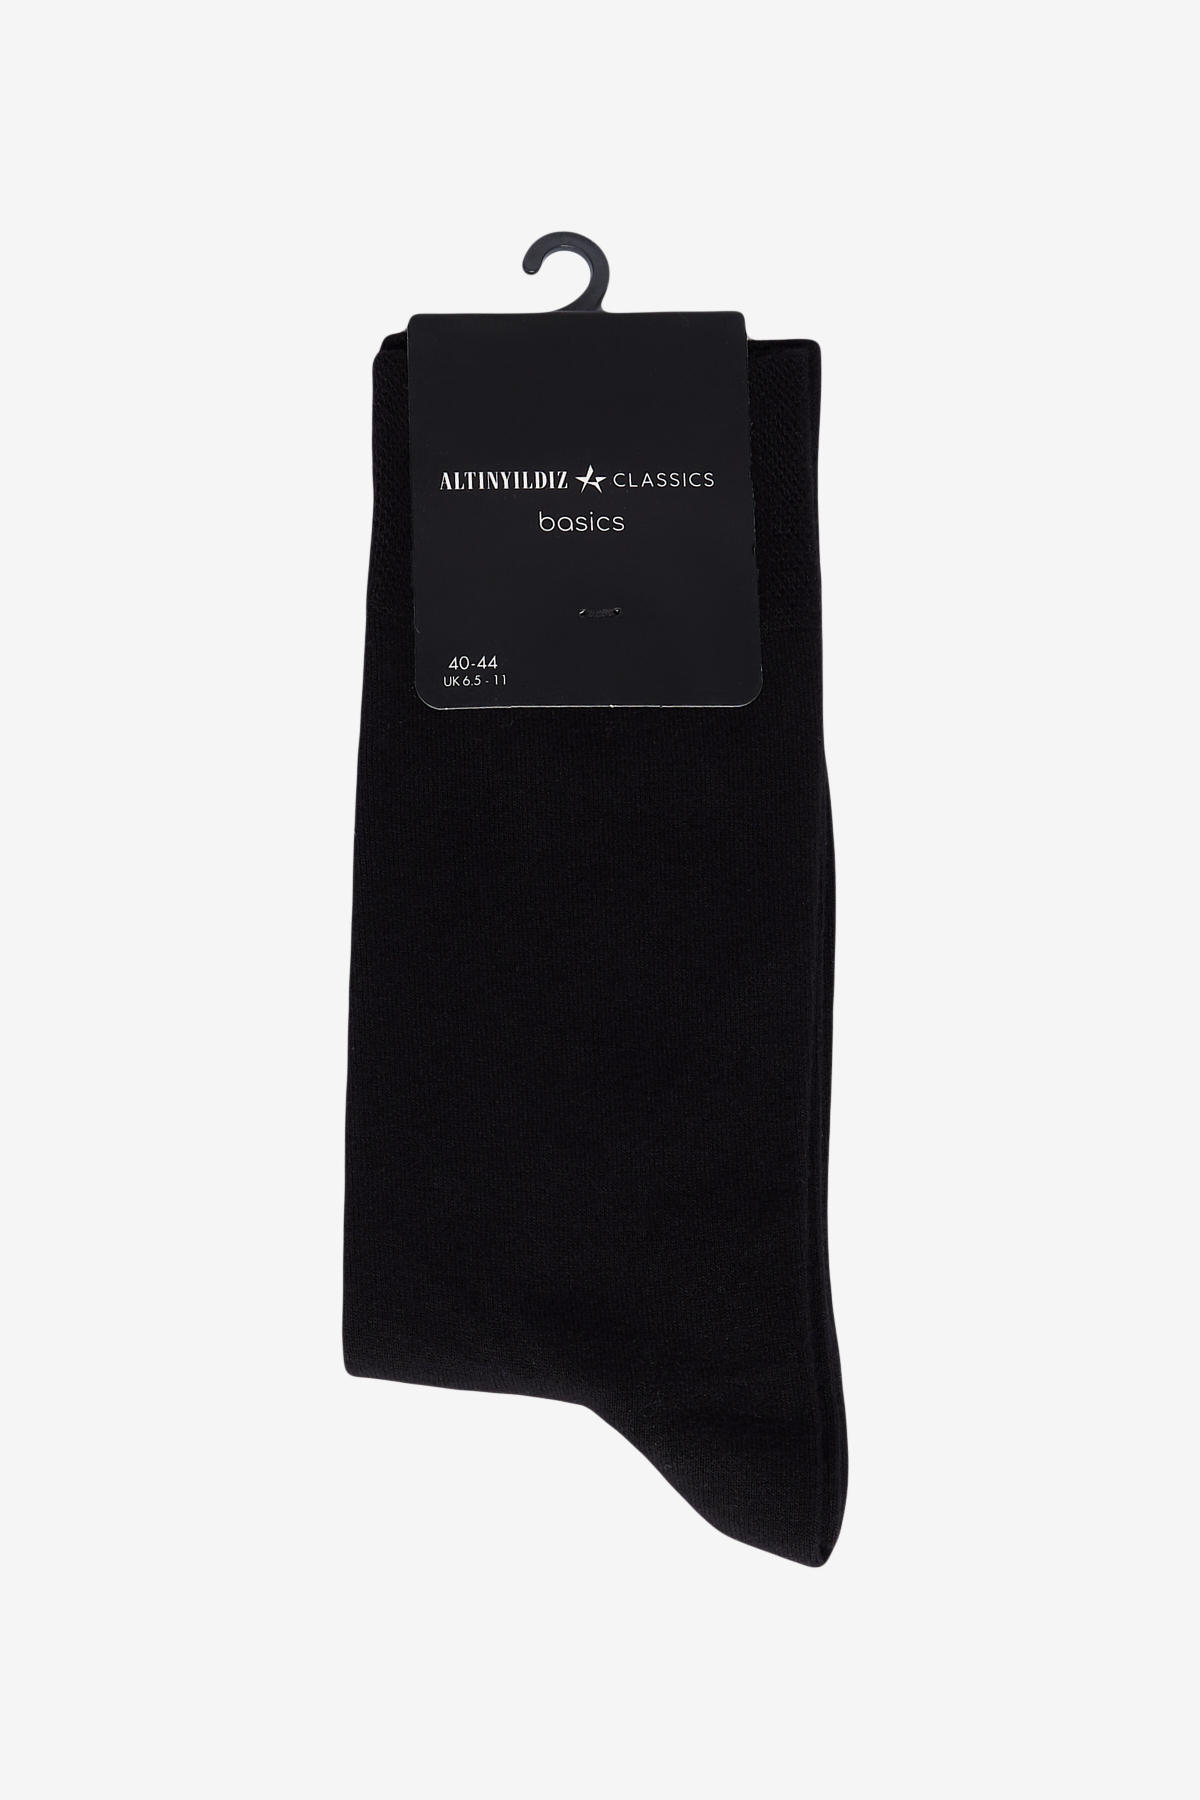 ALTINYILDIZ CLASSICS Men's Black Bamboo Single Socks